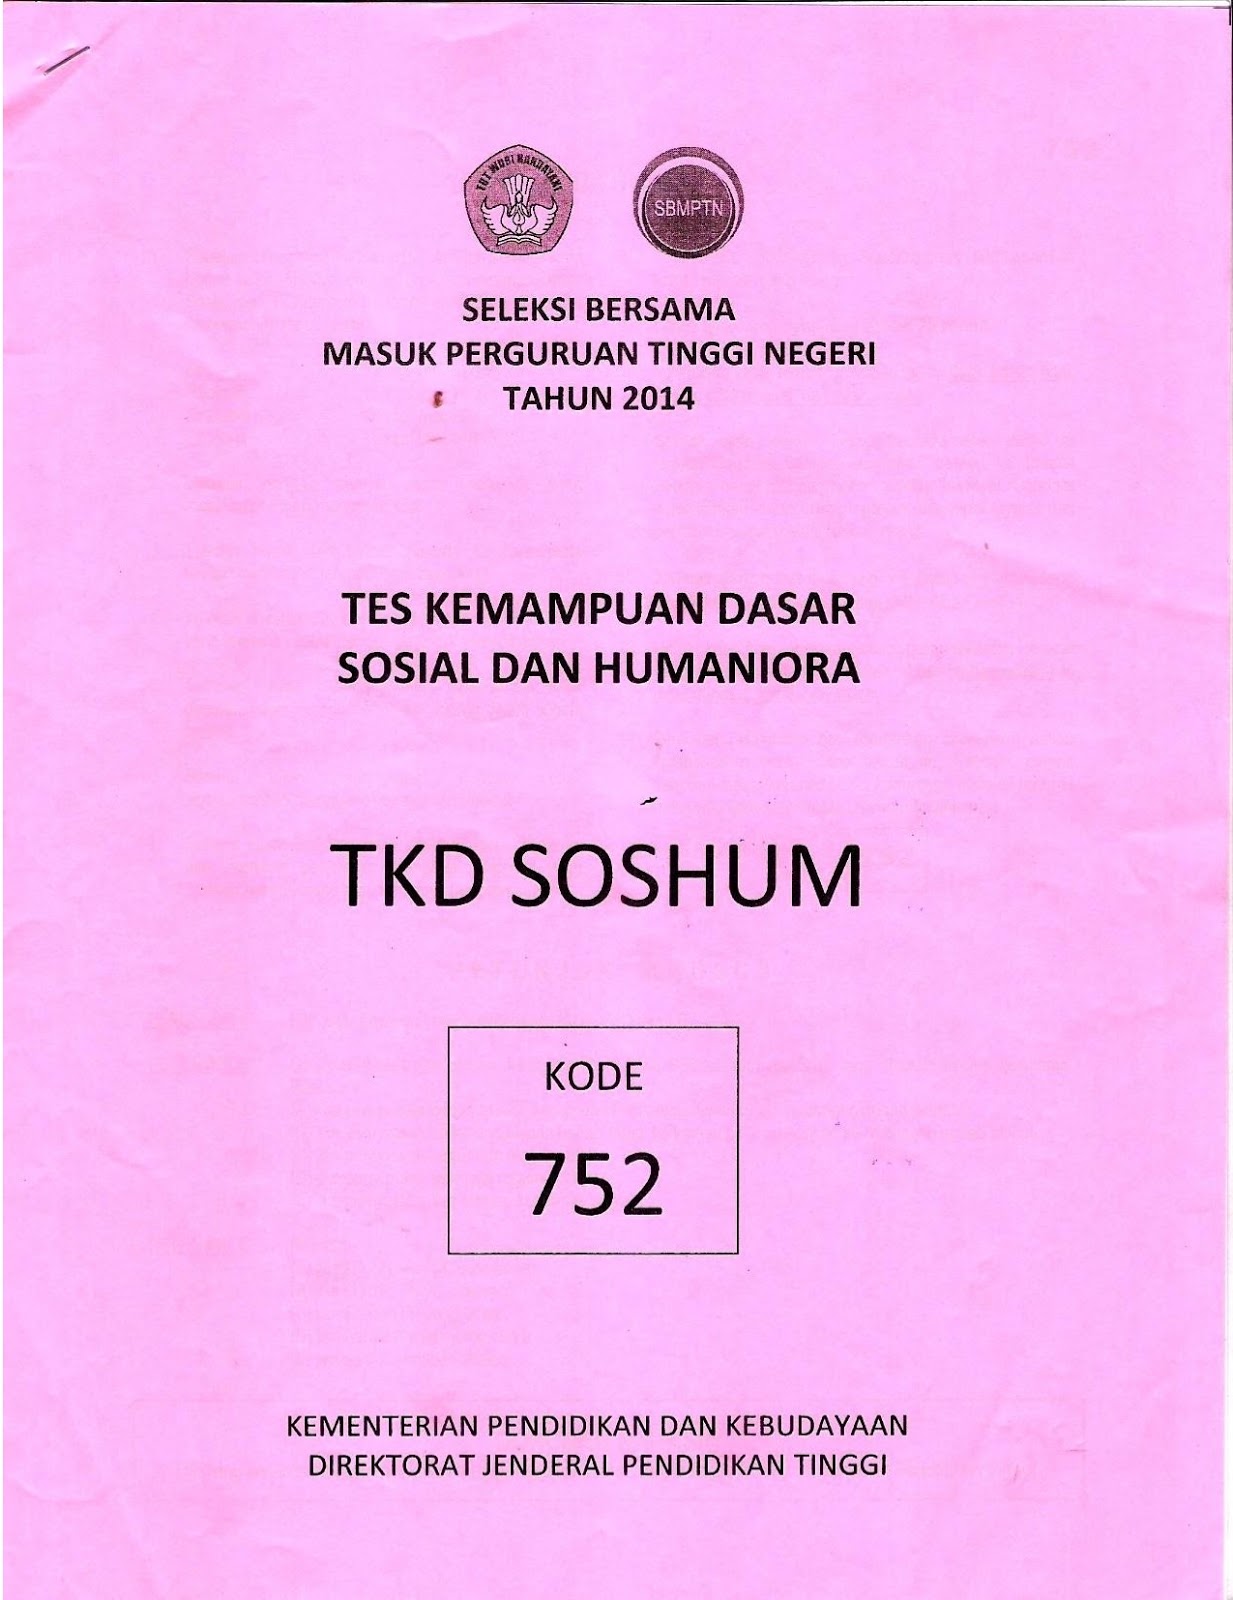 Download Naskah Soal SBMPTN 2014 Tes Kemampuan Dasar Ilmu Sosial dan Humaniora TKD Soshum Kode Soal 752